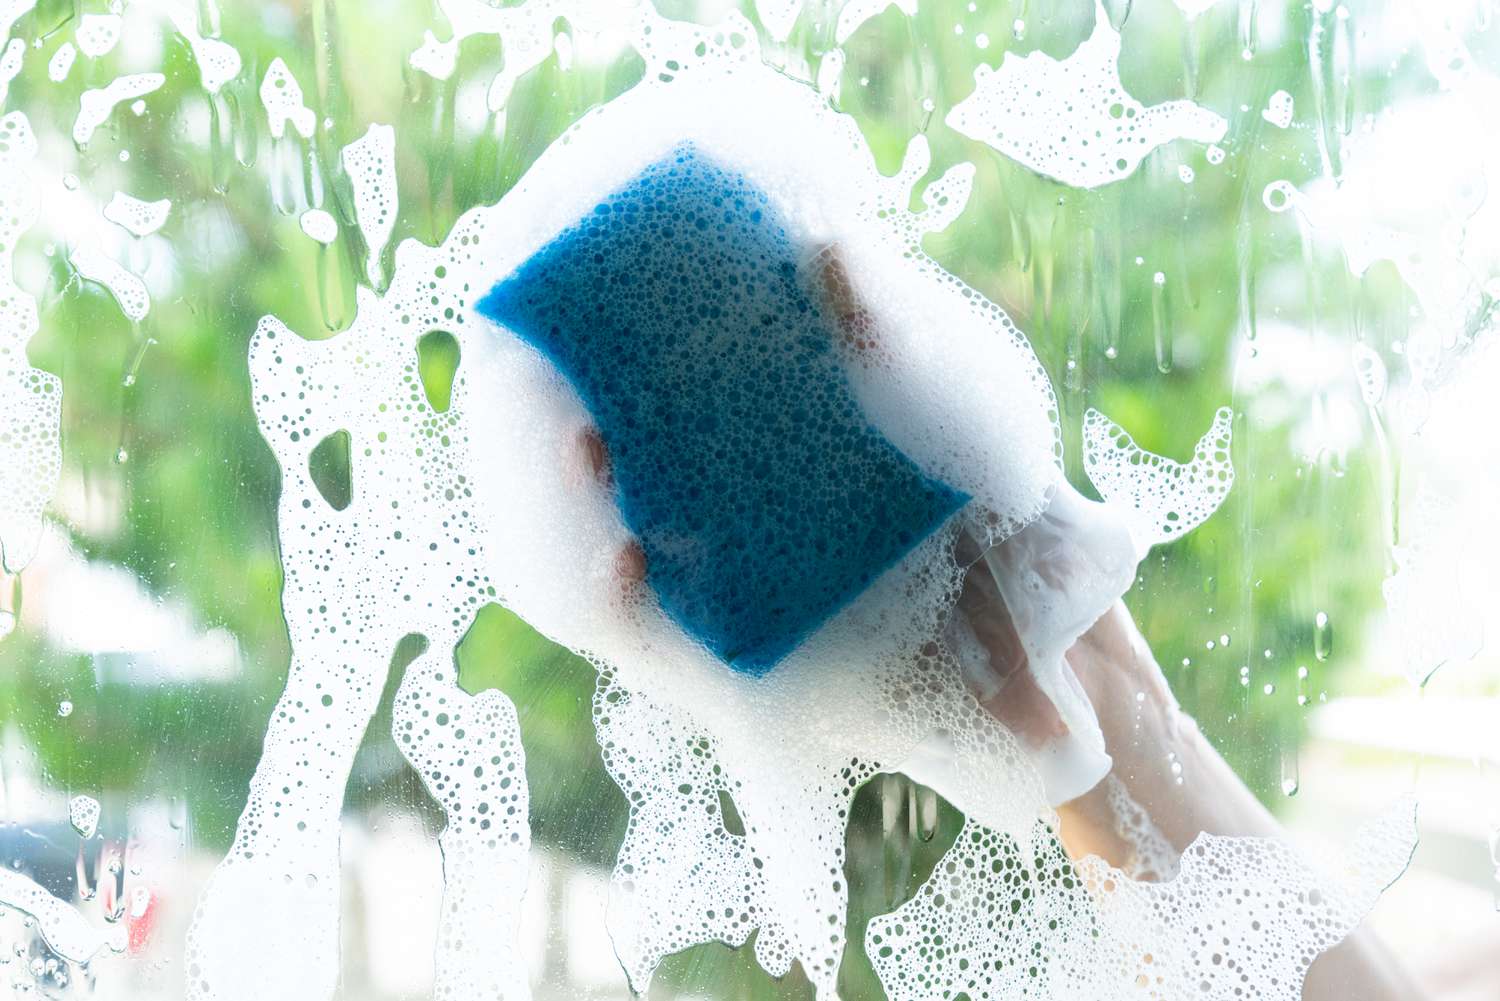 Janela limpa do lado de fora com esponja azul e água com sabão